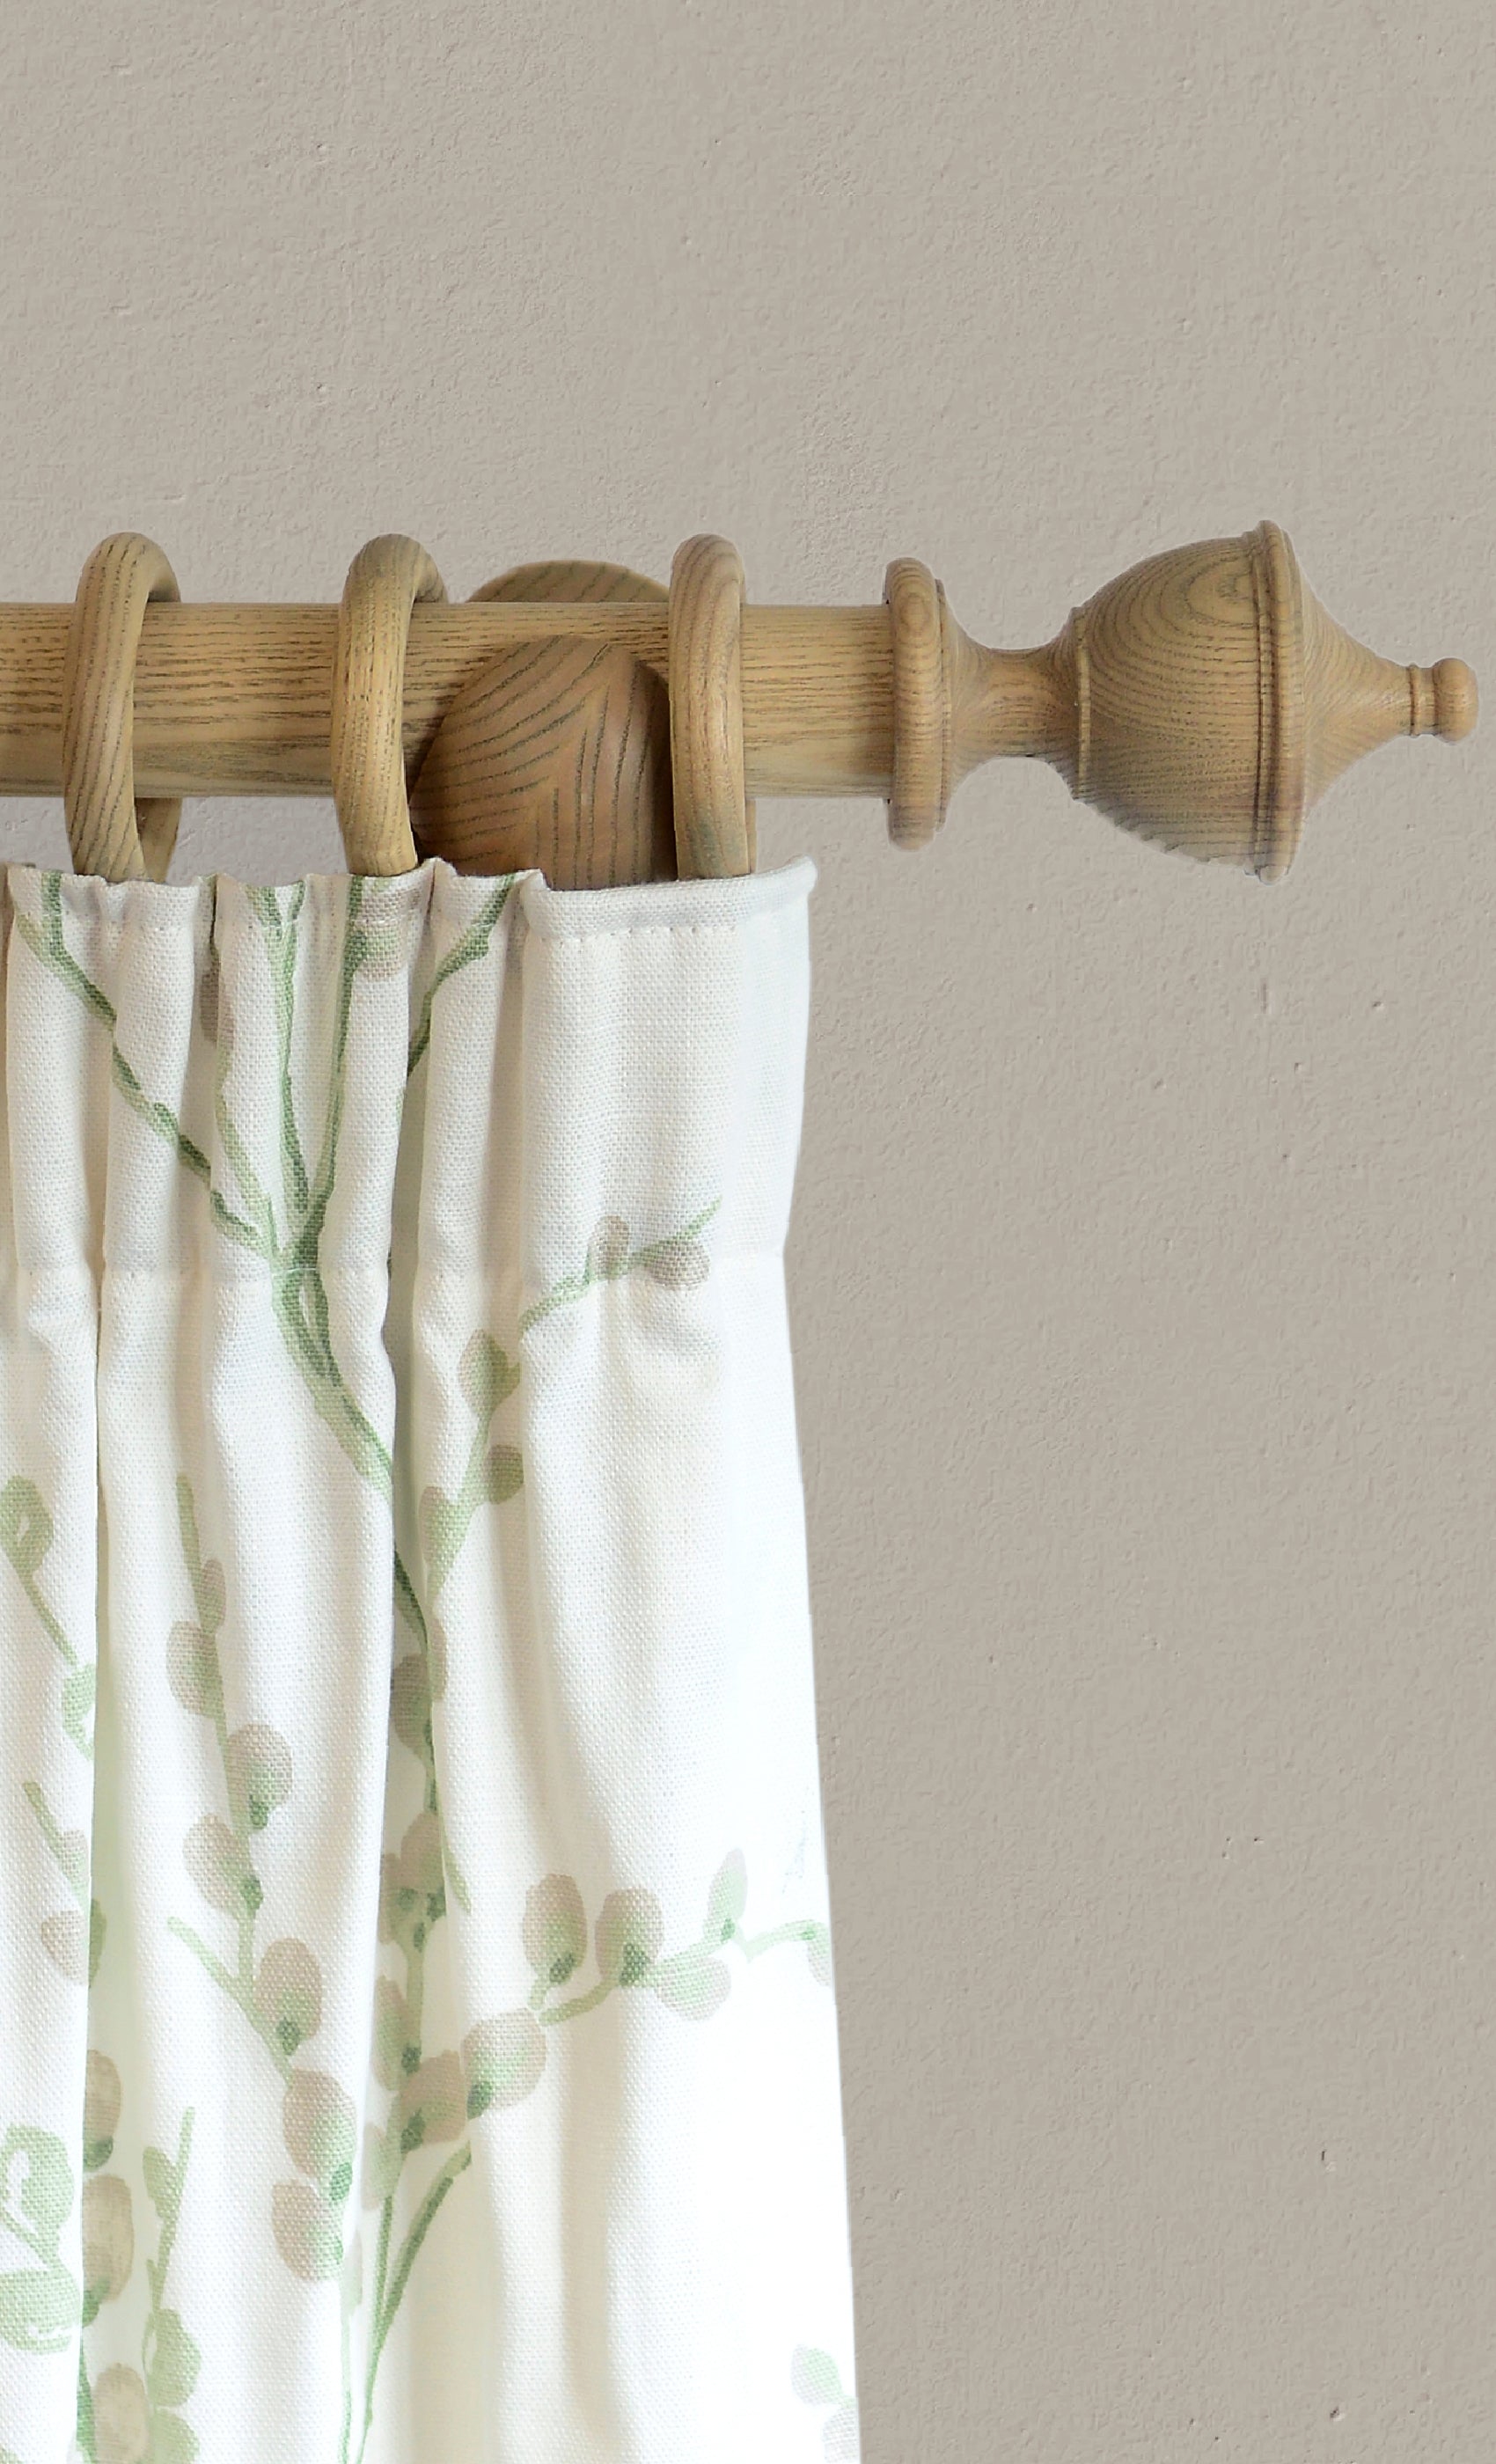 Laura Ashley Haywood Curtain Pole Set in Washed oak